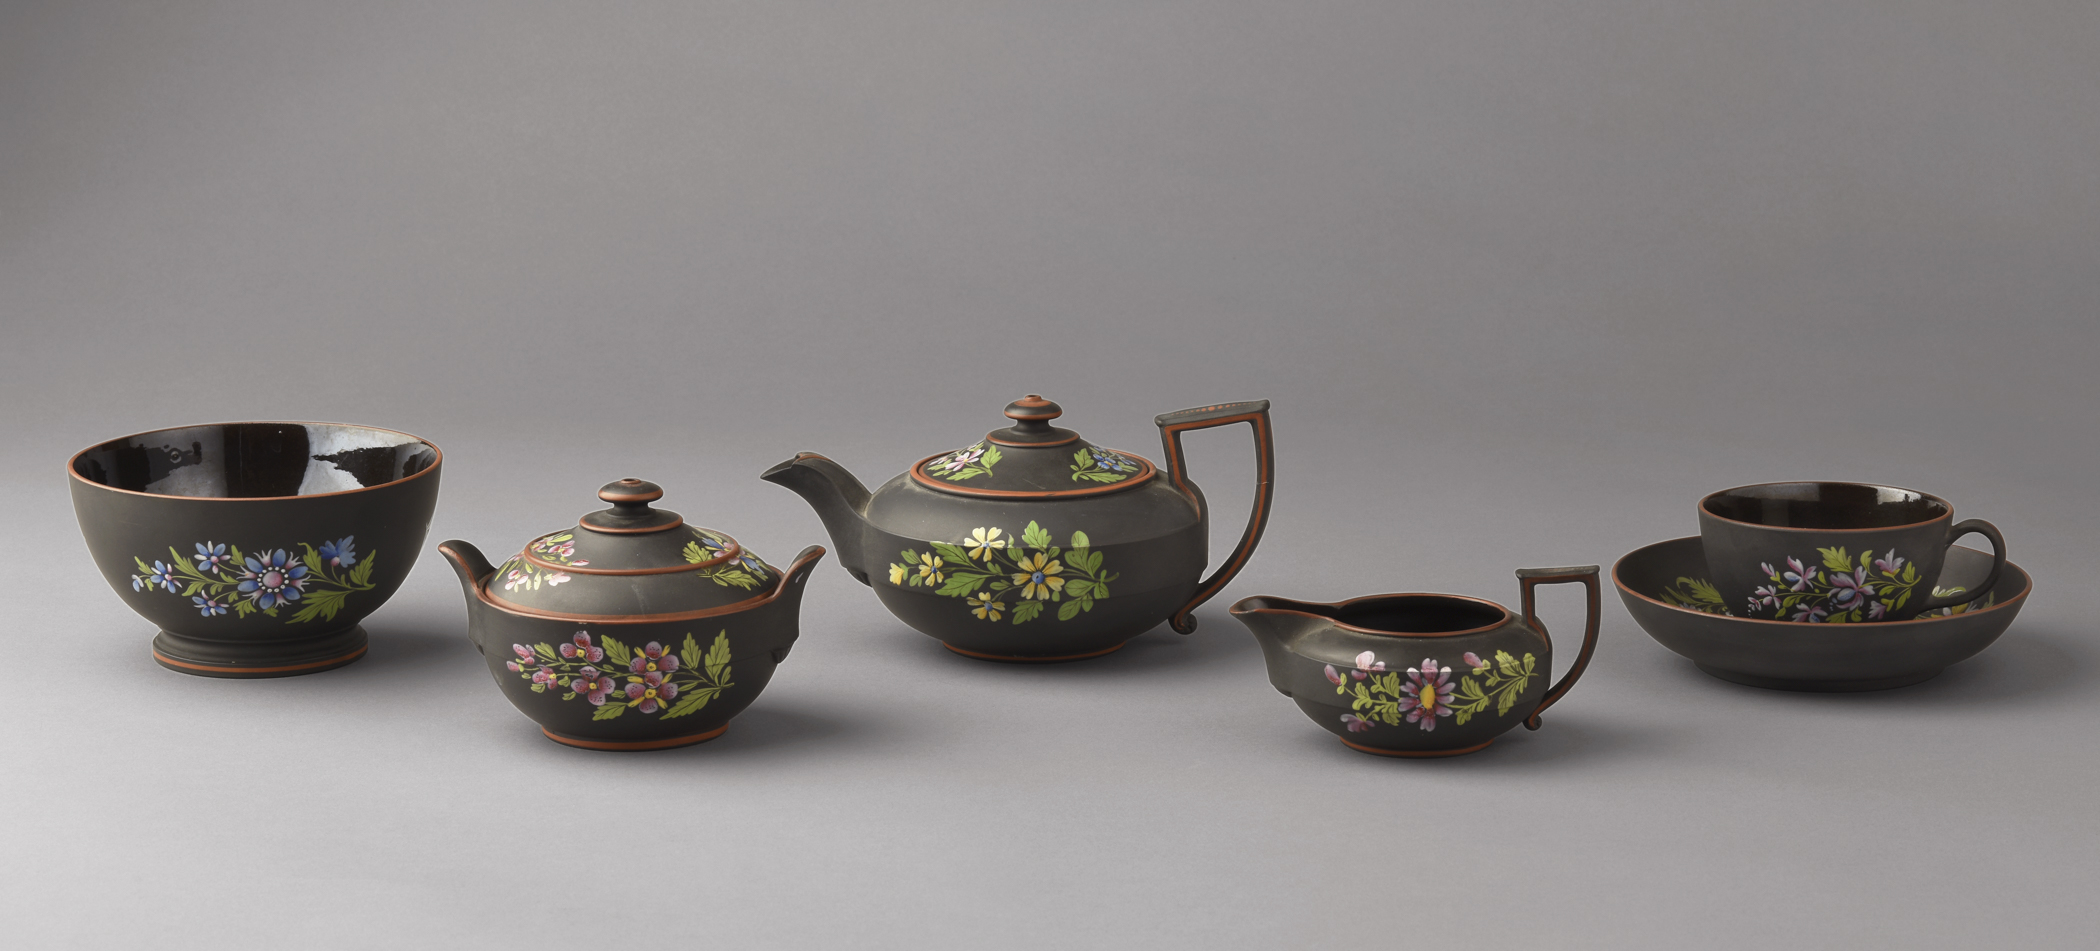 2015.0040.004 Bowl, .002 A, B Sugar bowl, .001 A, B Teapot, .003 Jug, .005 A, B Teacup and Saucer, view 1